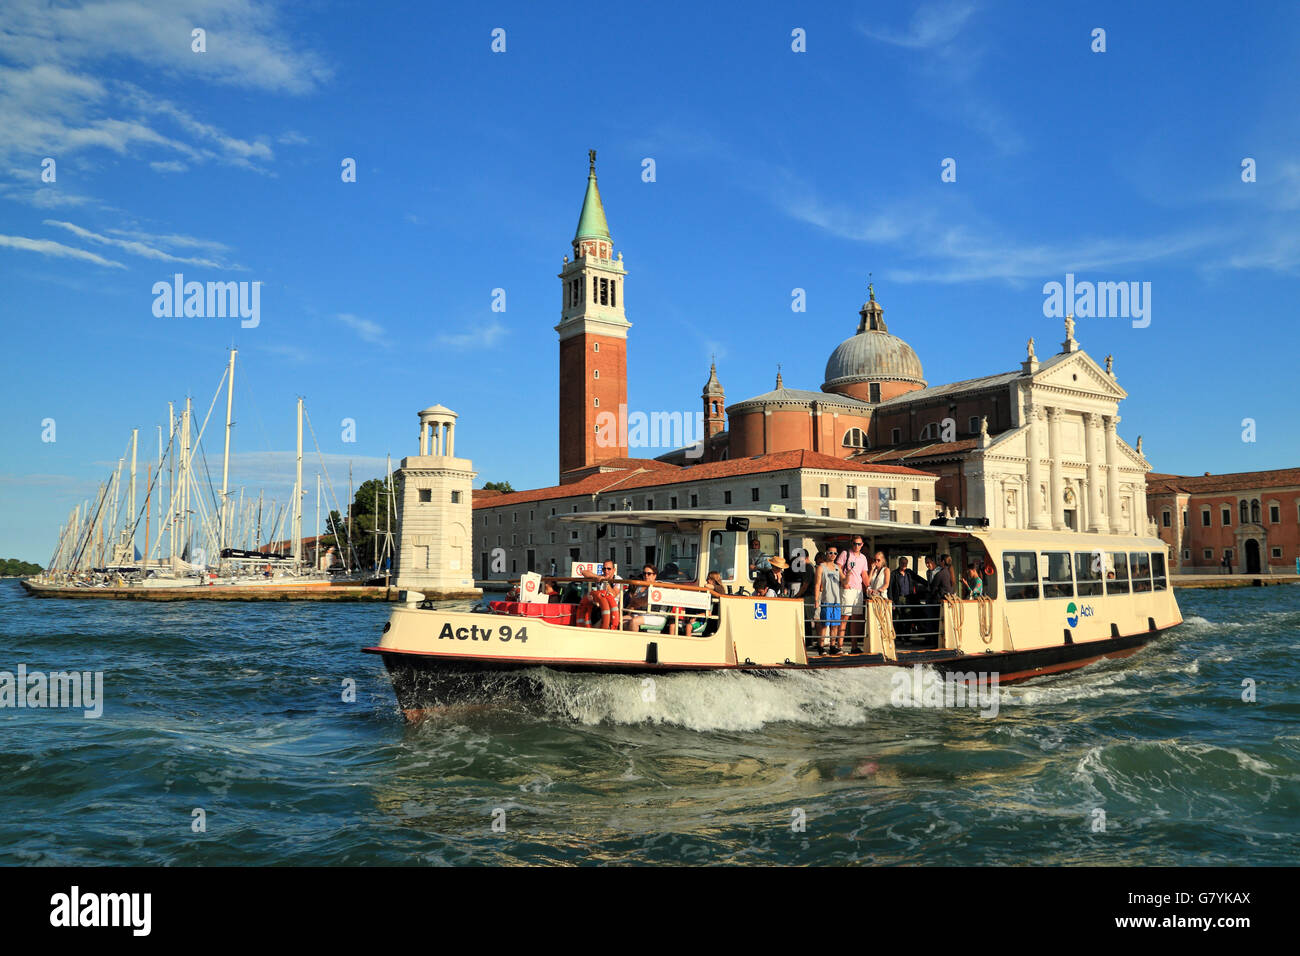 Vaporetto water-bus, Isola di San Giorgio Maggiore Island, Venice Stock  Photo - Alamy